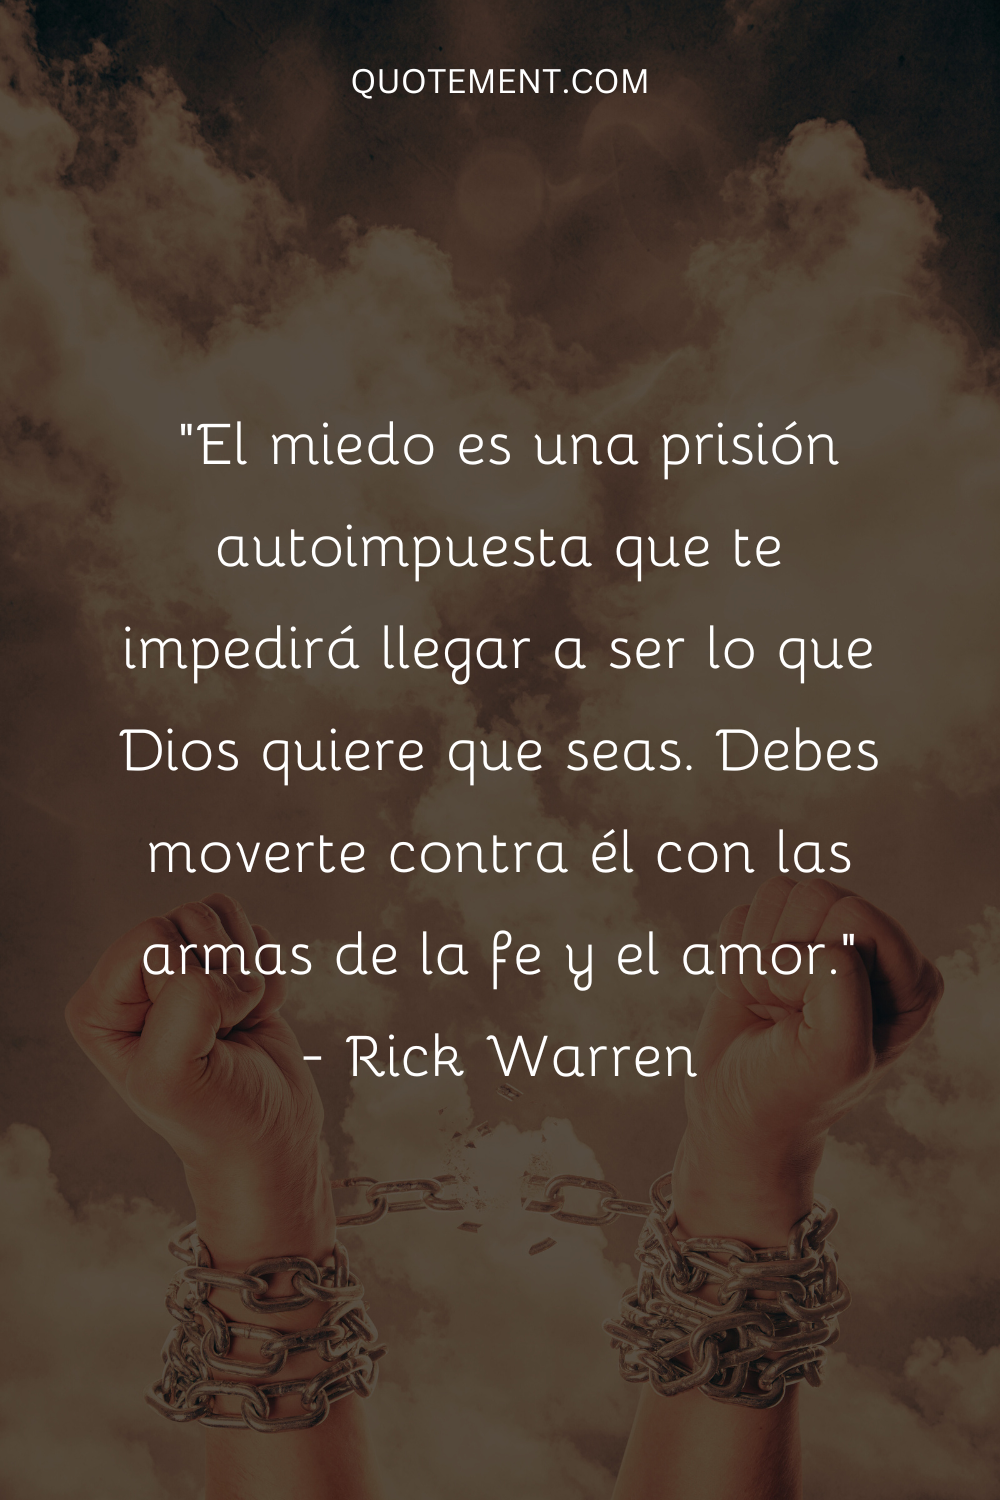 "El miedo es una prisión autoimpuesta que te impedirá llegar a ser lo que Dios quiere que seas. Debes moverte contra él con las armas de la fe y el amor". - Rick Warren